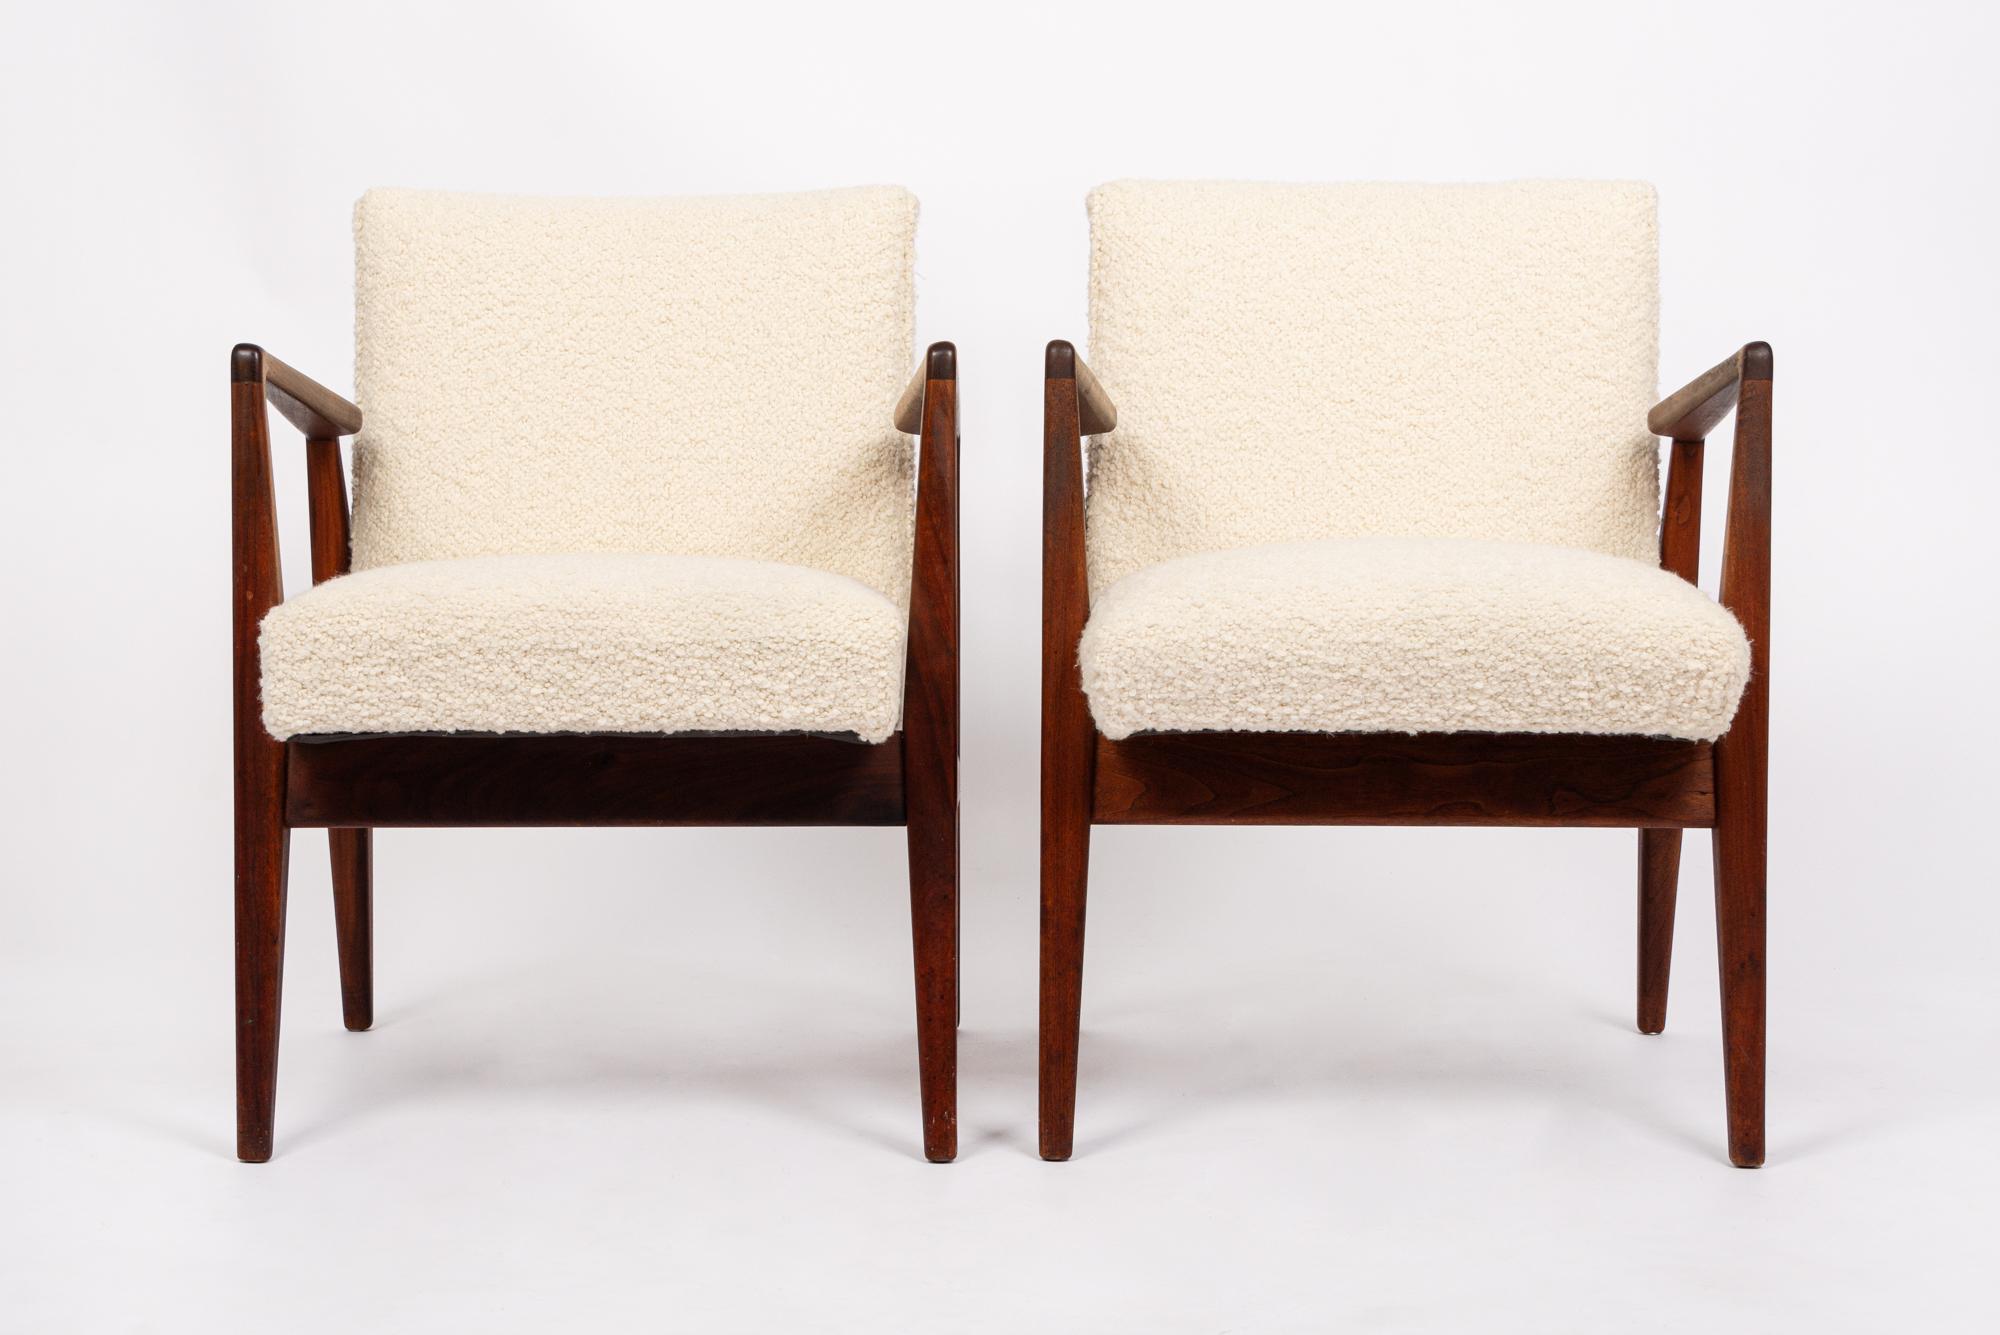 Cette paire de chaises de salon vintage du milieu du siècle a été conçue par Jens Risom vers 1960. Le design moderne danois classique présente des lignes épurées et minimalistes et un profil sculptural saisissant. Les chaises longues sont dotées